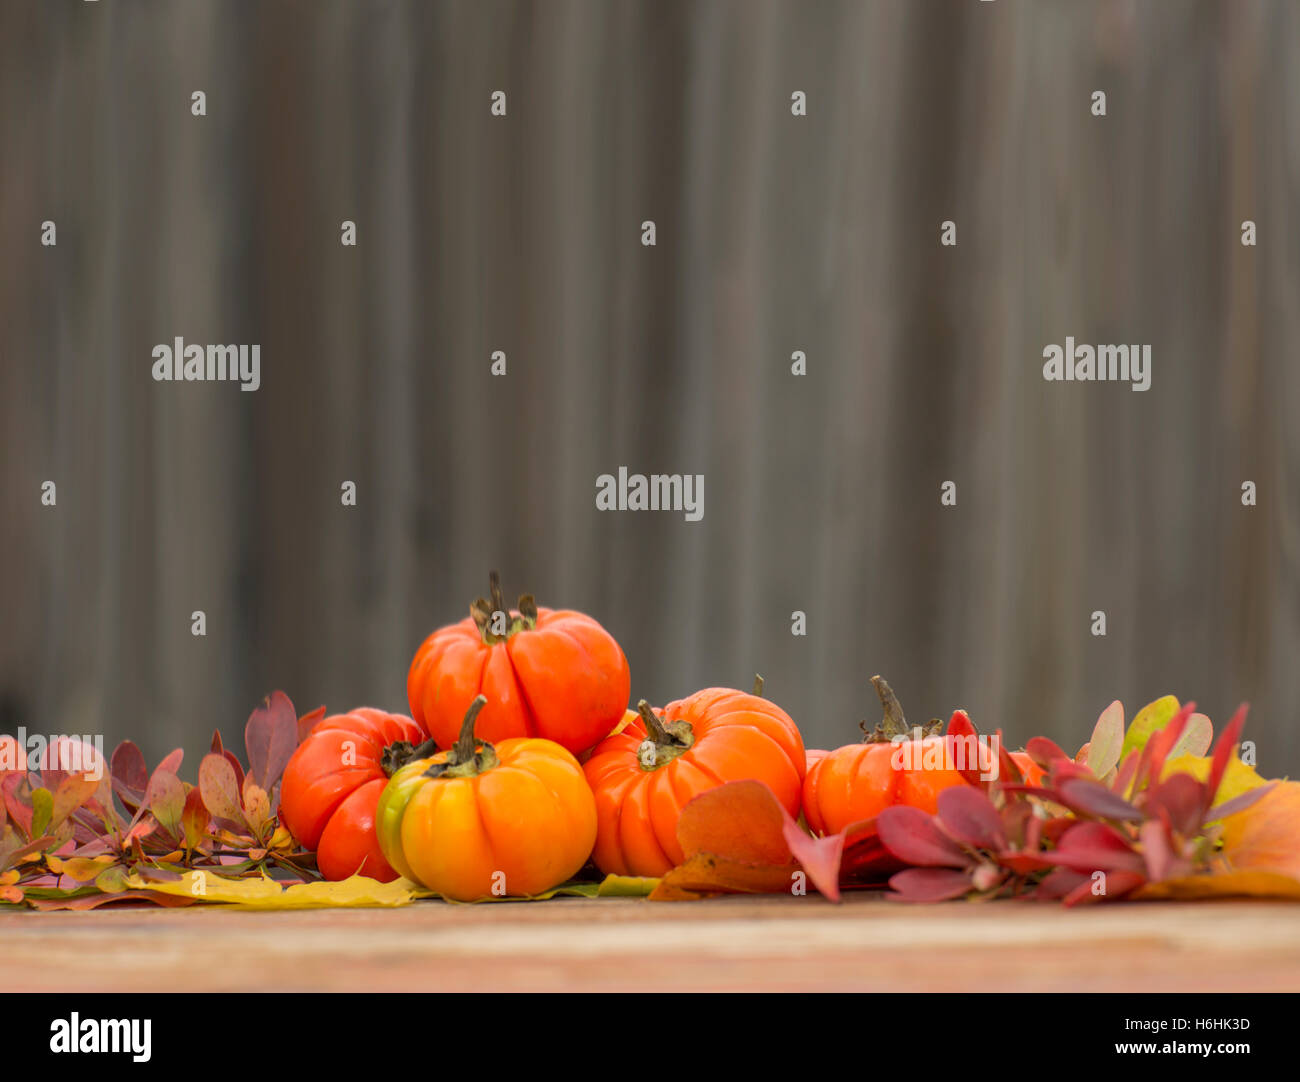 A Seasonal Fall Backdrop Stock Photo